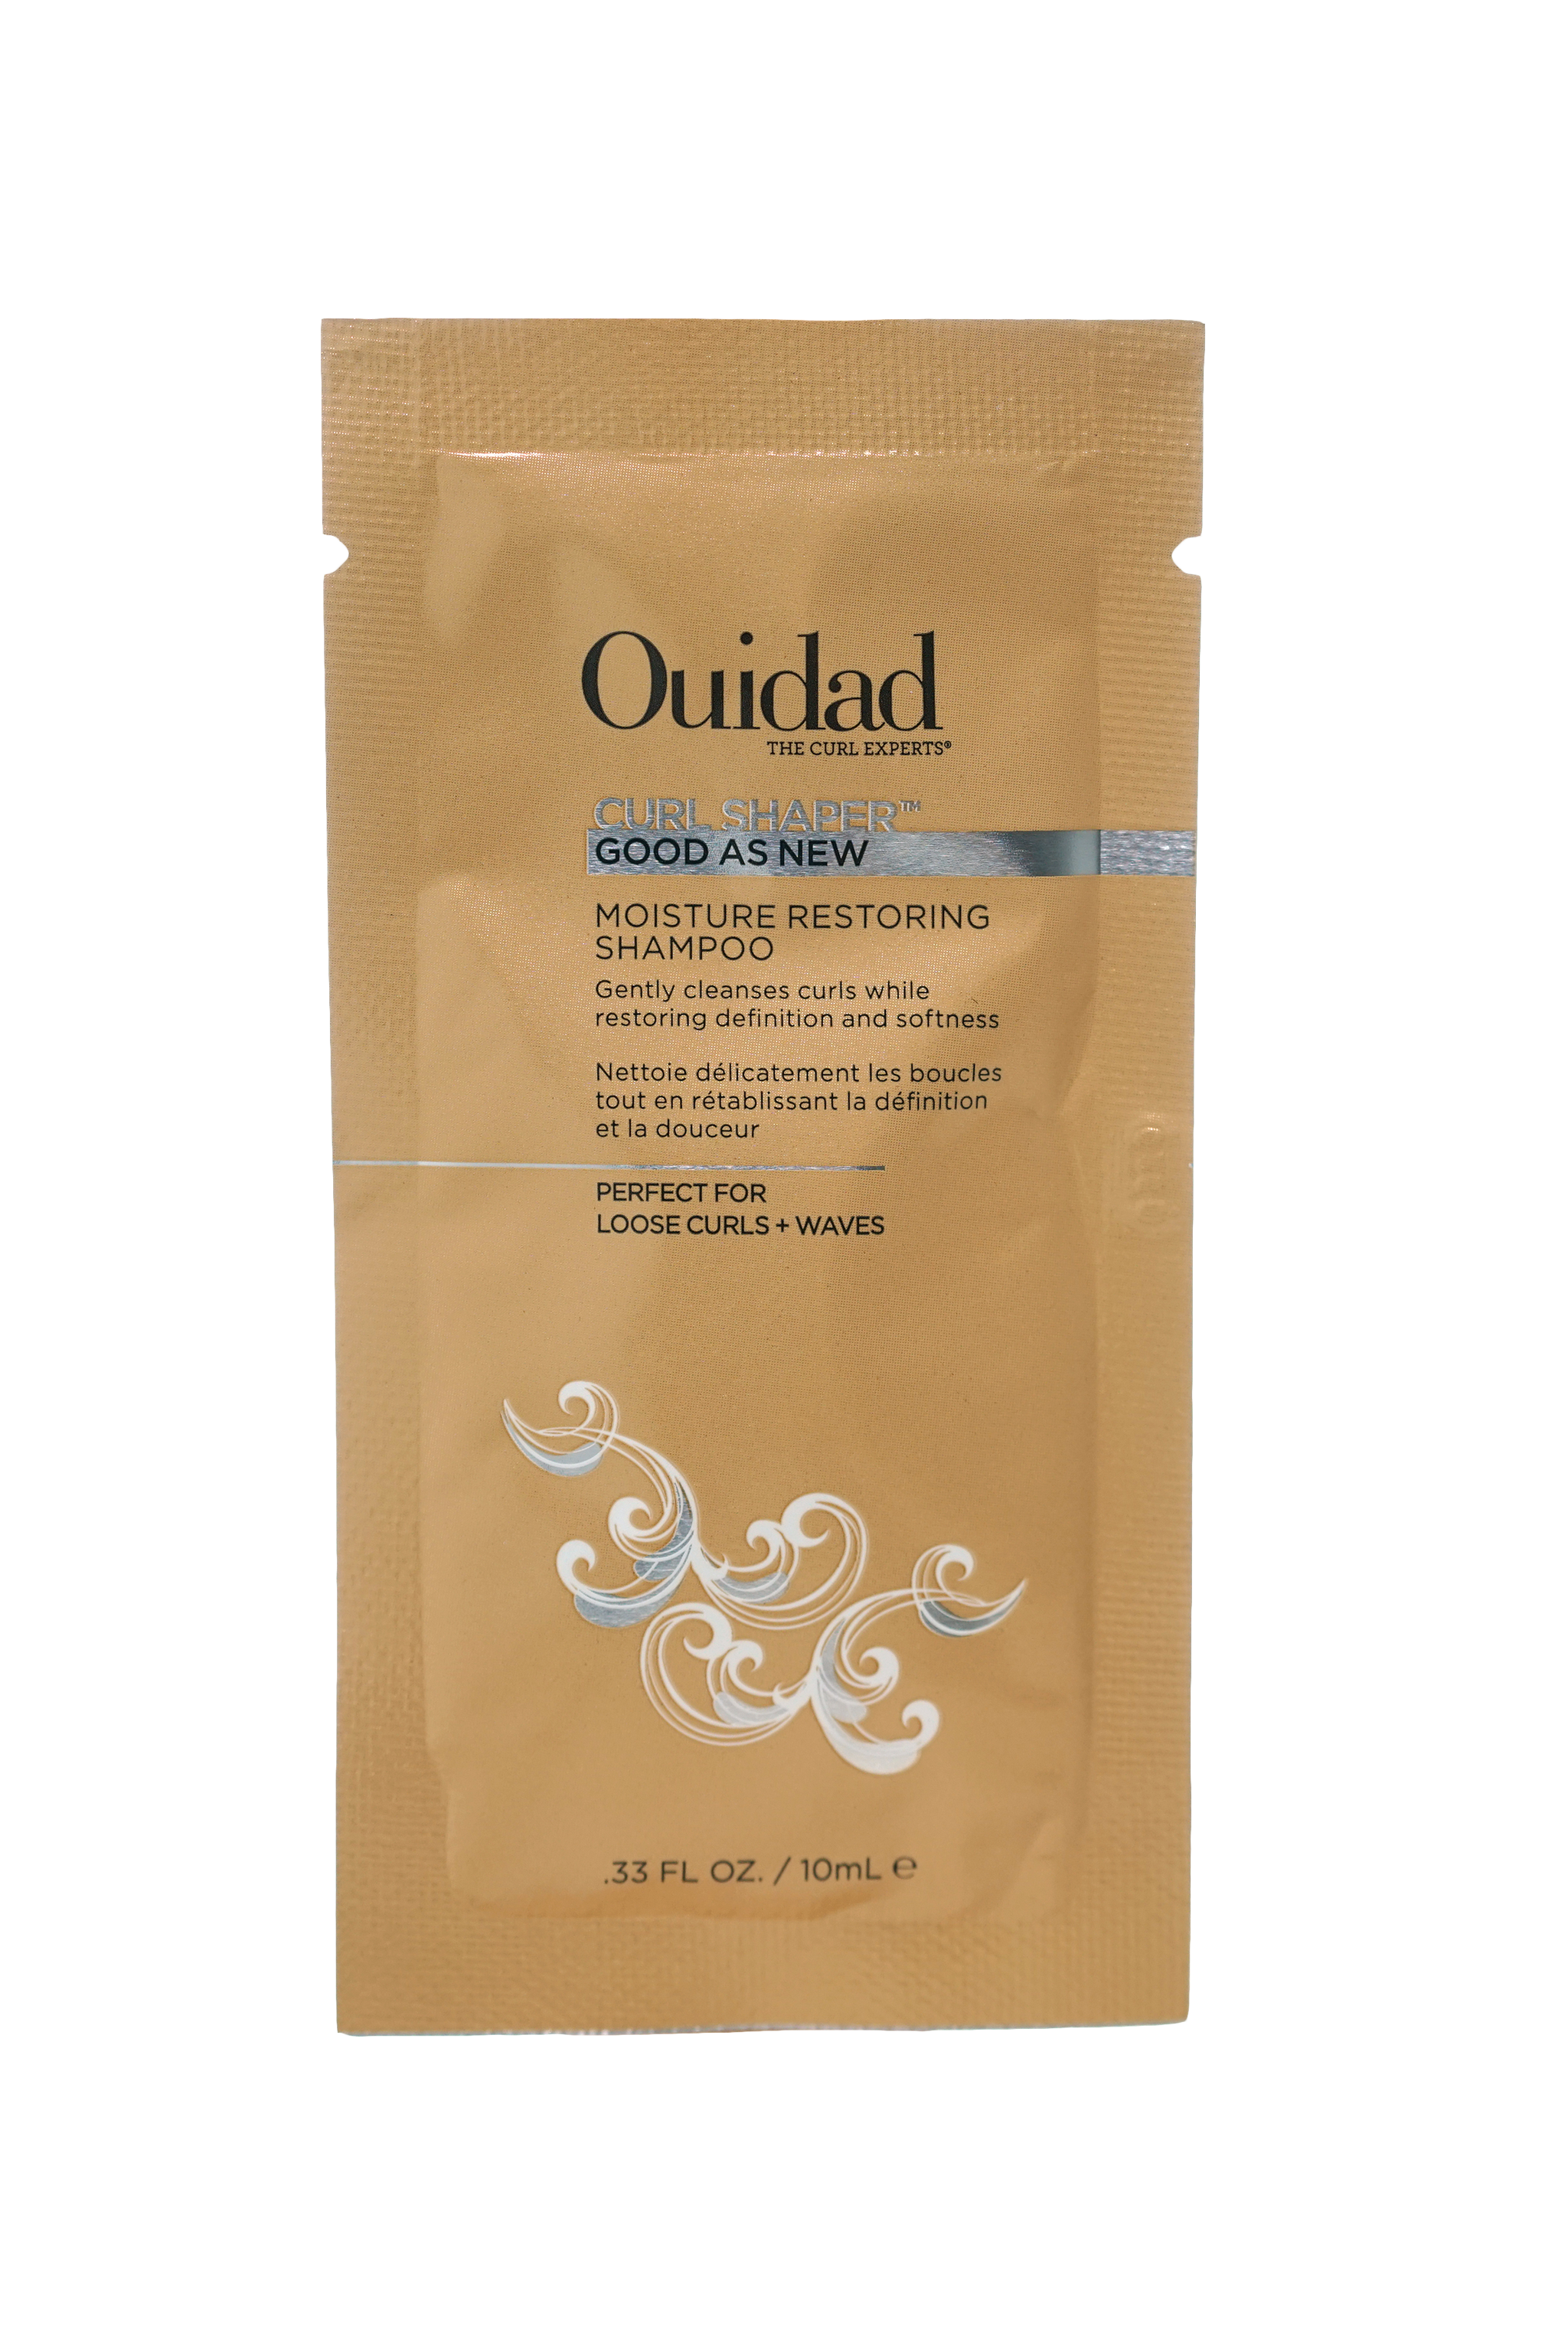 OUIDAD Botanical Boost Curl Energizing & Refreshing Spray 33.8oz/1L